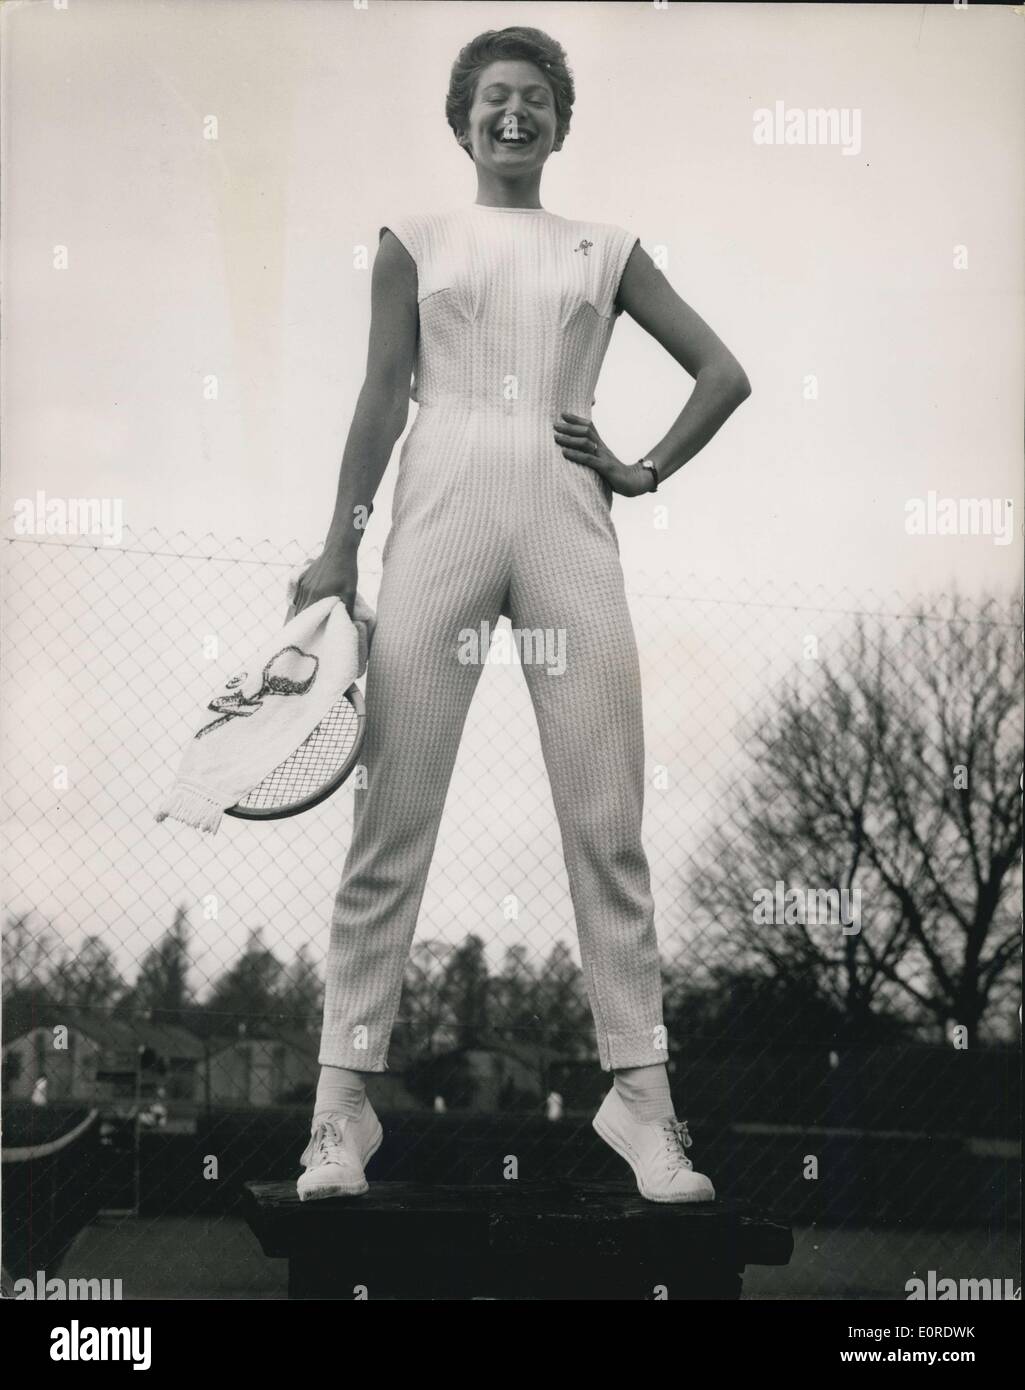 30 mars 1959 - Angela Buxton prend part au tournoi de Roehampton : Parmi les concurrents dans le tournoi de tennis de Roehampton ce matin, c'est Angela Buxton - qui s'est vêtu d'un superbe tenue - comprenant un tout-en-un costume de tennis en jersey tricoté coton type doté d''une demi-ceinture à la r avec une grande boucle et une frange. C'est porté avec écharpe en éponge avec un motif de tennis. La photo montre la vue avant du tout-en-un pong costume porté par Angela Buxton à Roehampton, aujourd'hui. Banque D'Images